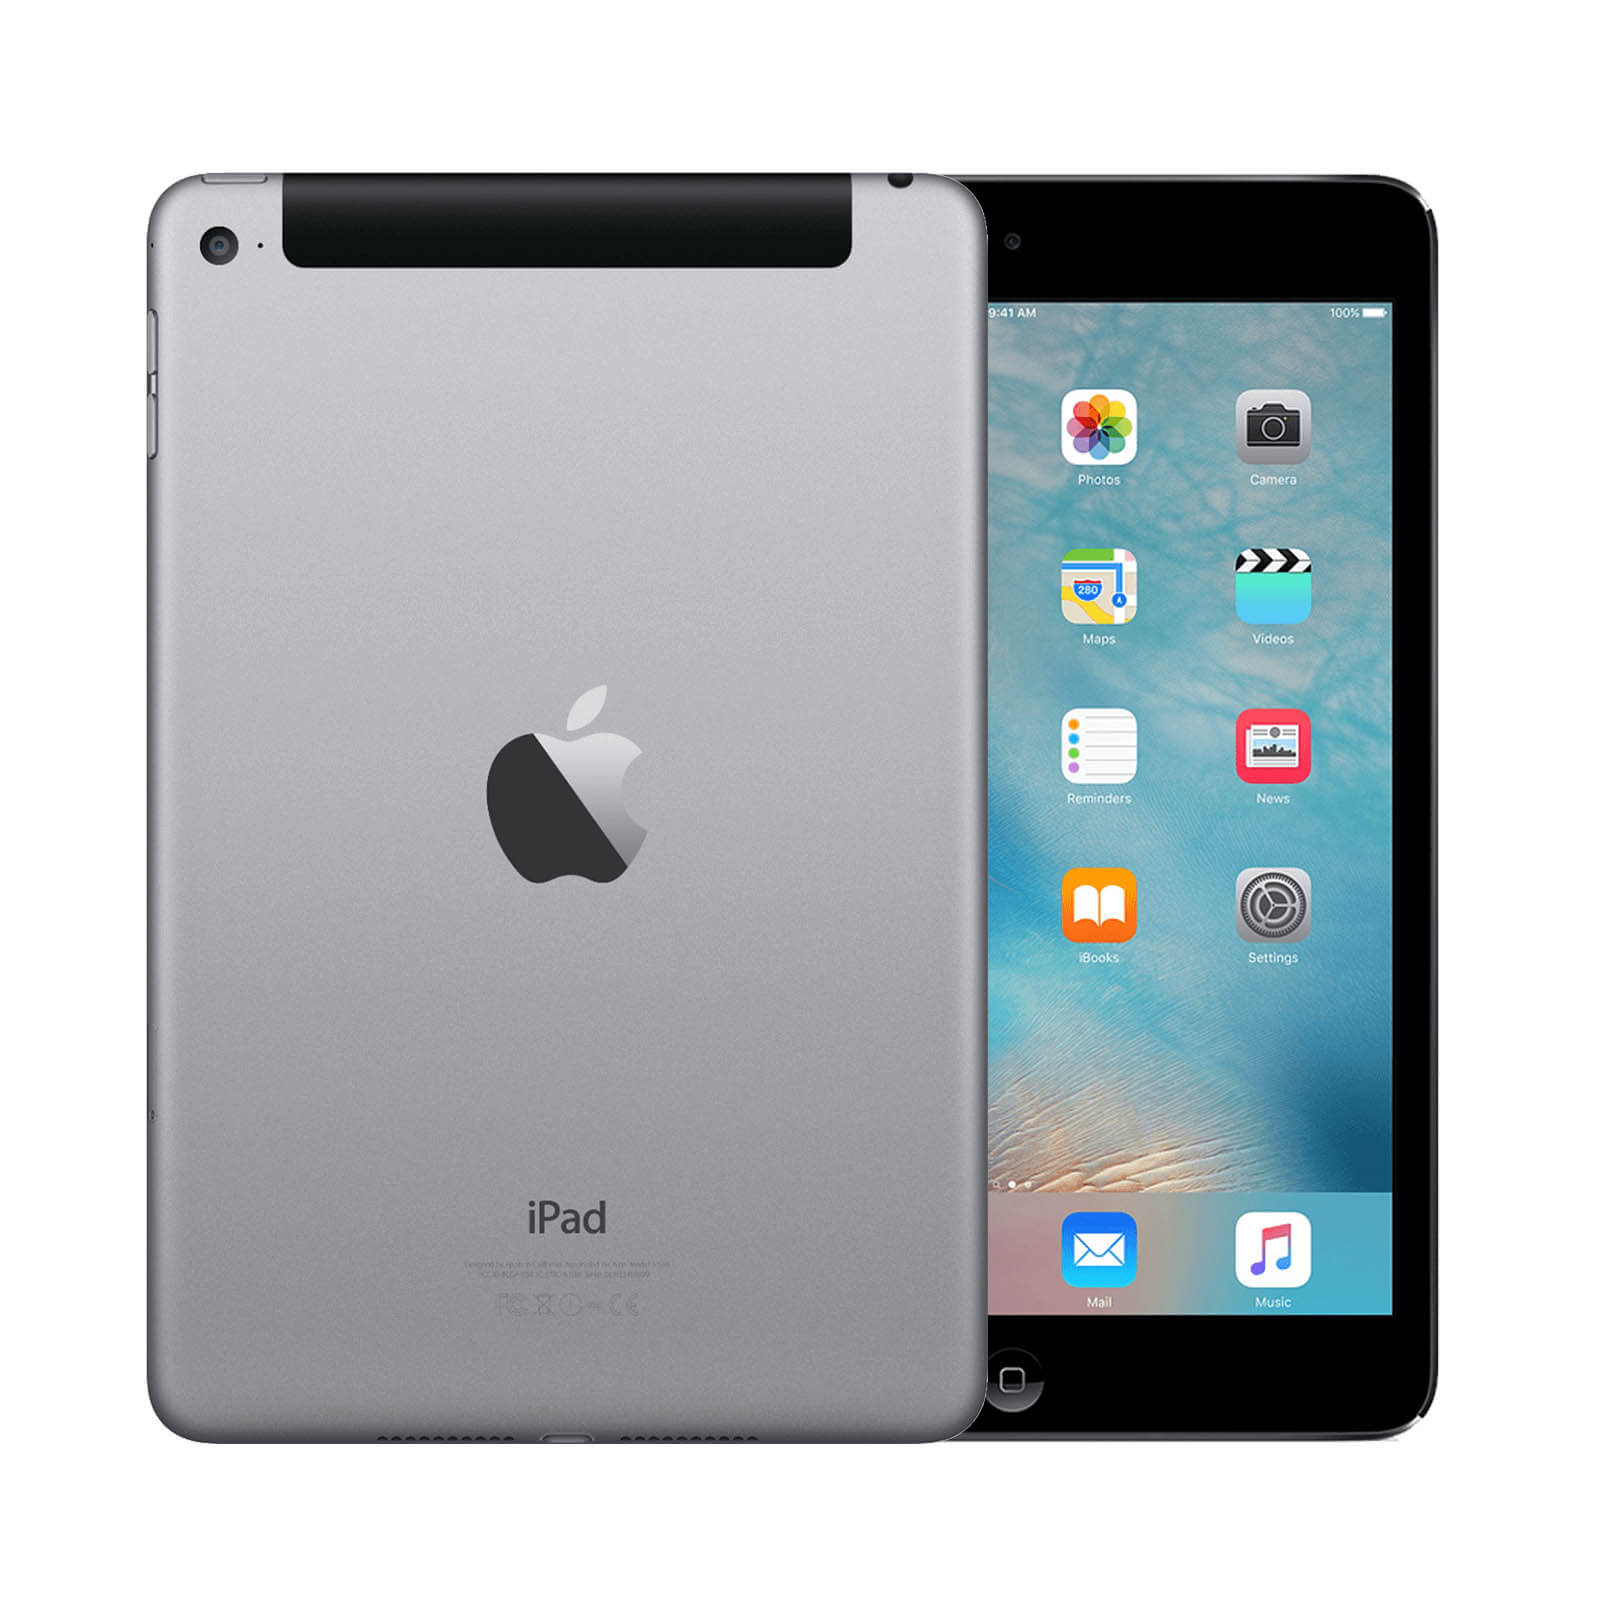 Apple iPad Mini 4 128GB Space Grey WiFi & Cellular - Good 128GB Space Grey Good